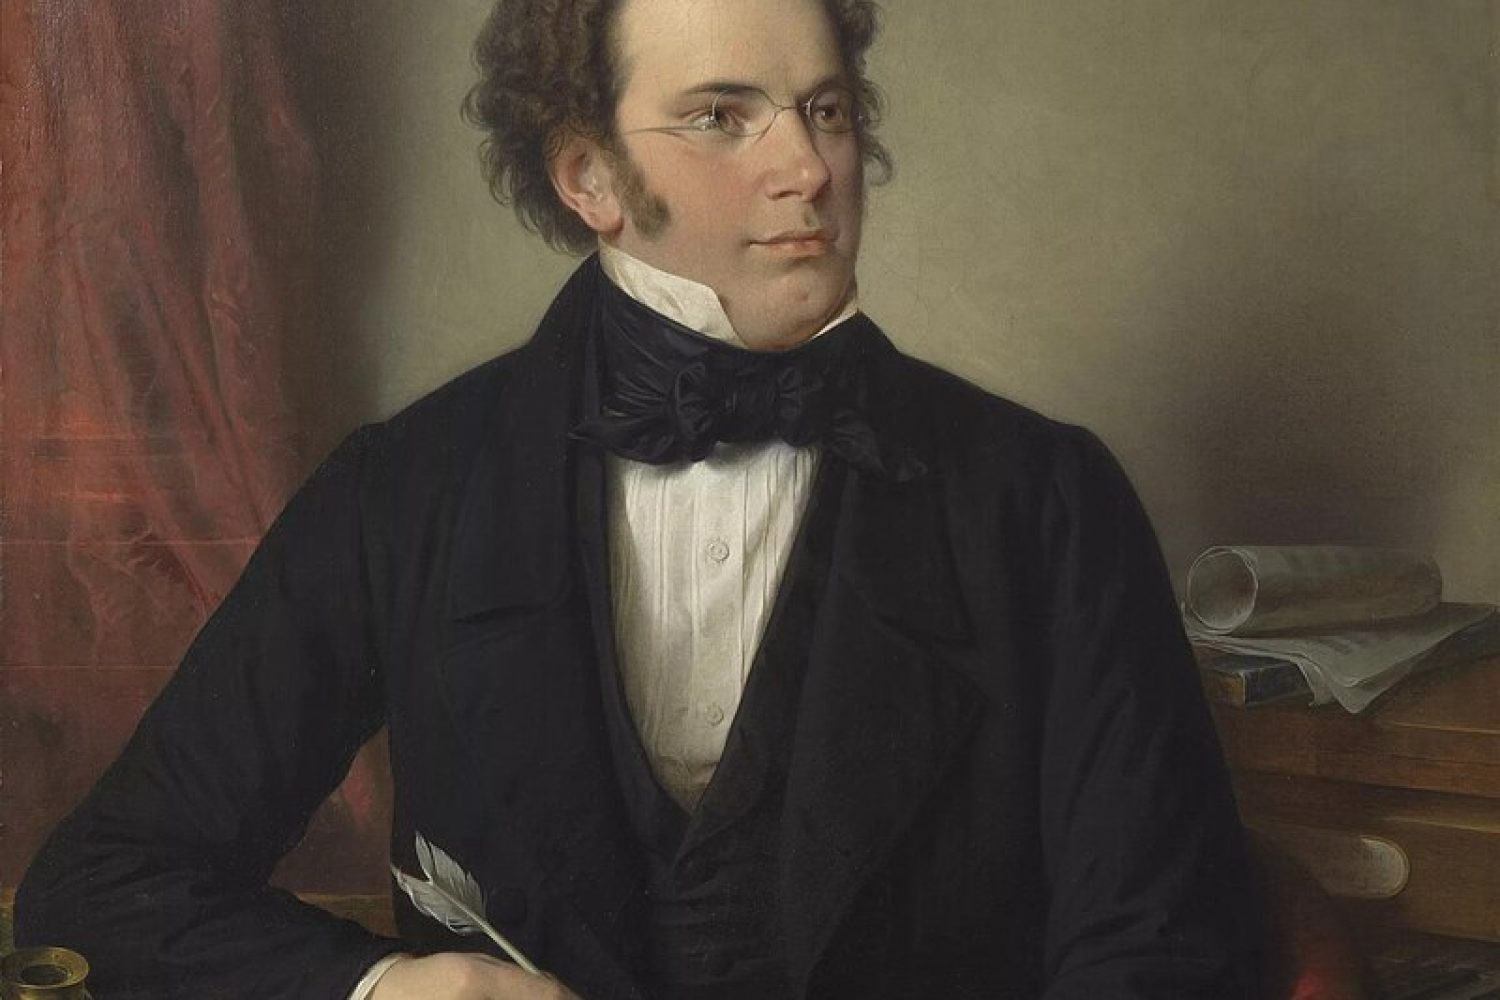 Portrait à l'huile de Franz Schubert par Wilhelm August Rieder, d'après son propre portrait aquarellé de 1825, Musée de Vienne, 1875